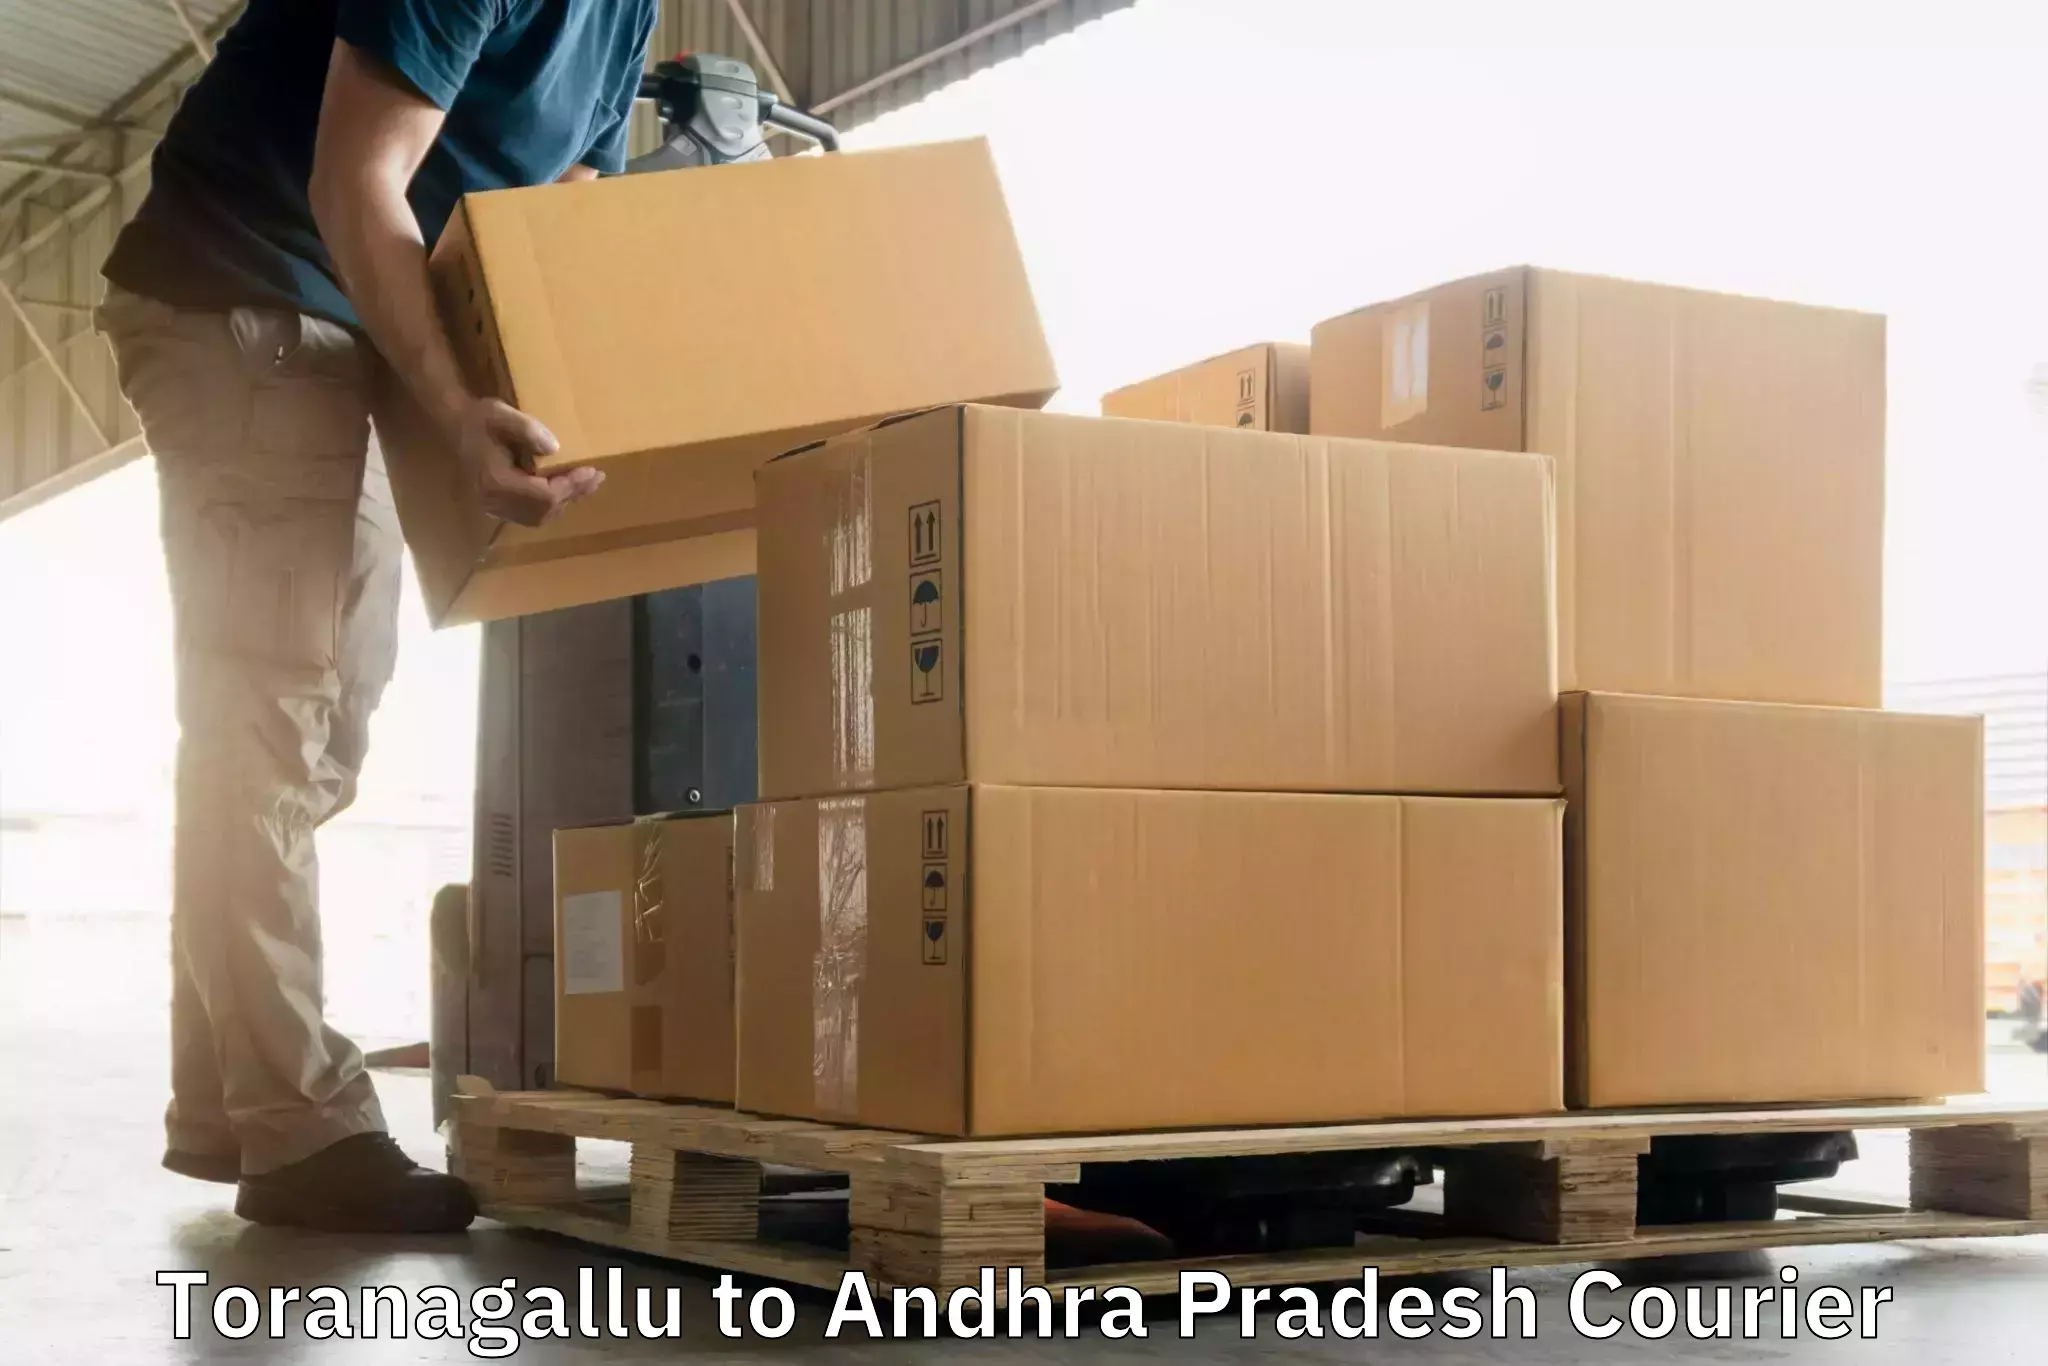 Pharmaceutical courier in Toranagallu to Tirupati